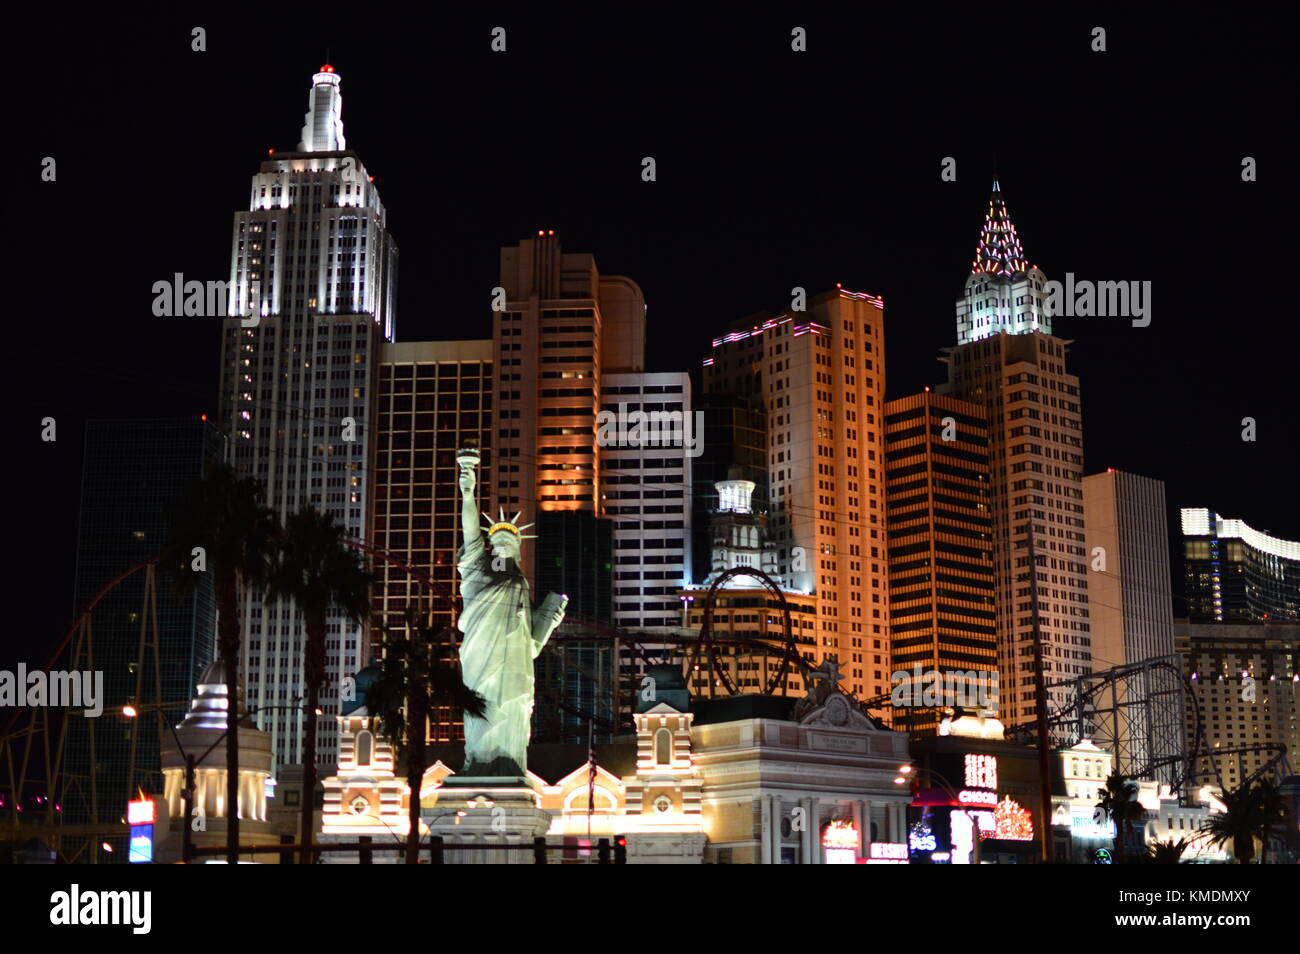 New York New York hotel casino, con falsos estatua de la libertad. Gran casino en el famoso Strip de Las Vegas, Nevada, Estados Unidos de América. Foto de stock